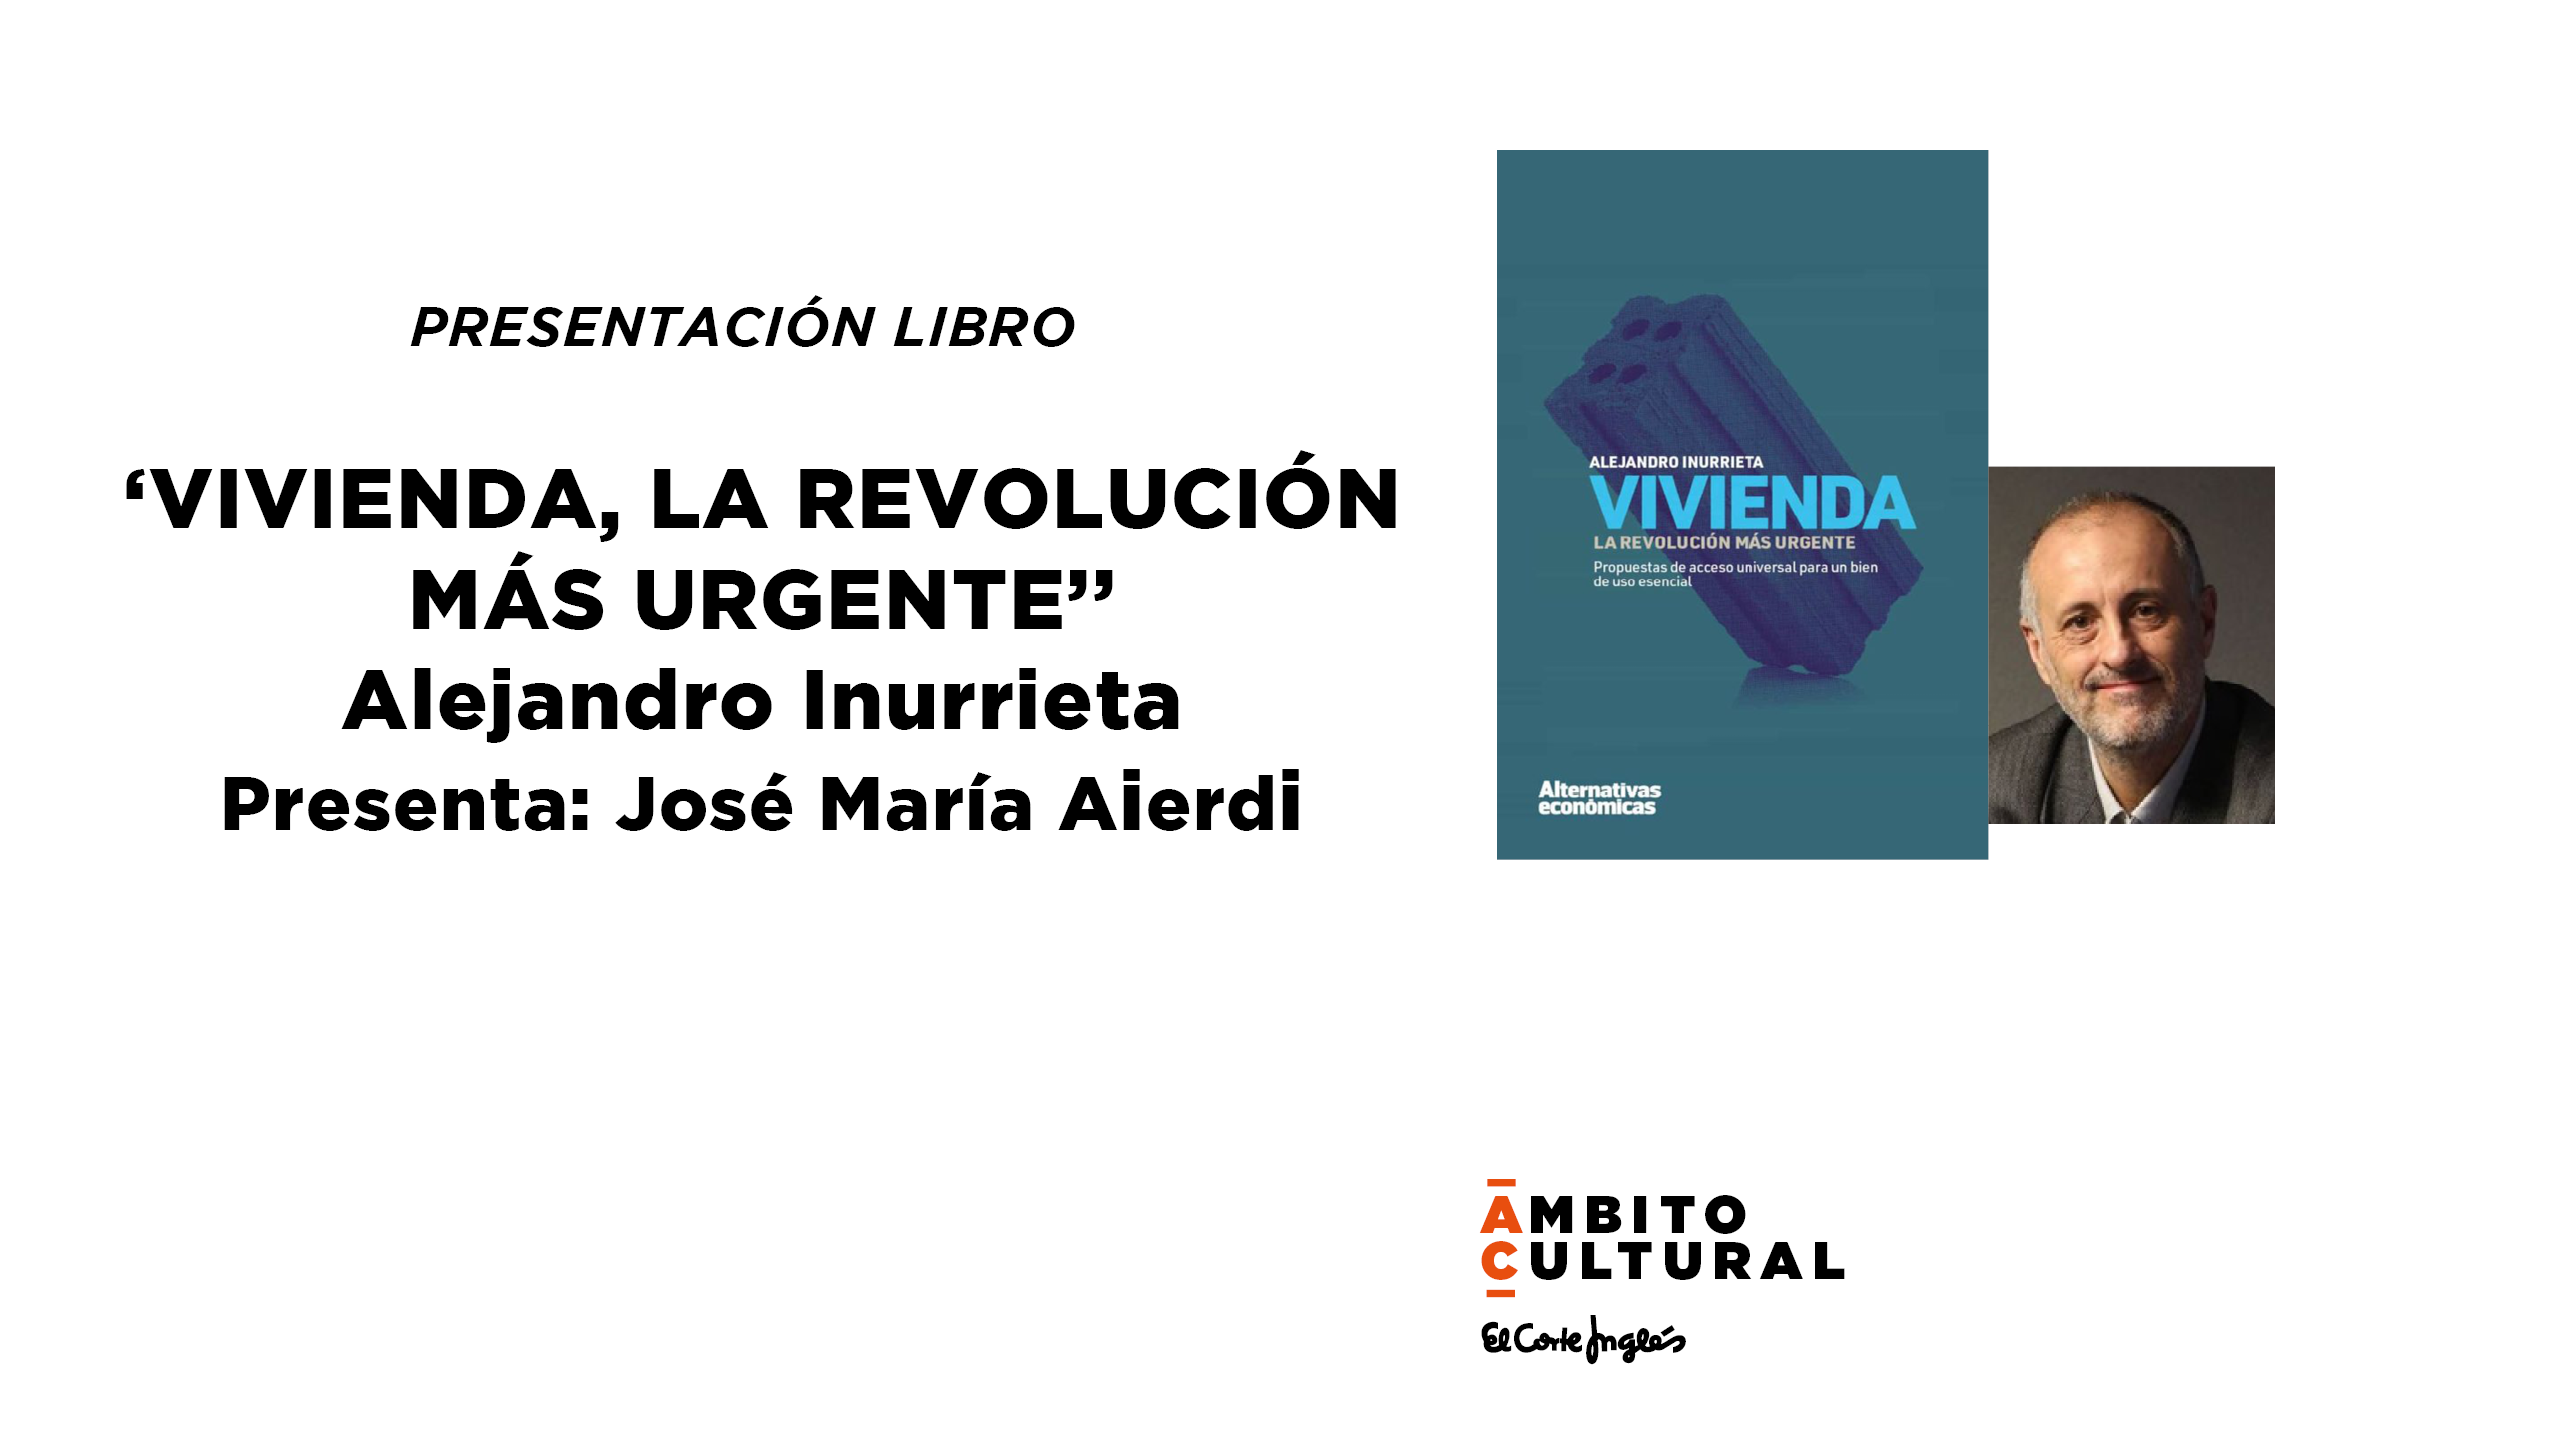 Imagen del evento PRESENTACIÓN LIBRO: "VIVIENDA, LA REVOLUCIÓN MÁS URGENTE" DE ALEJANDRO INURRIETA